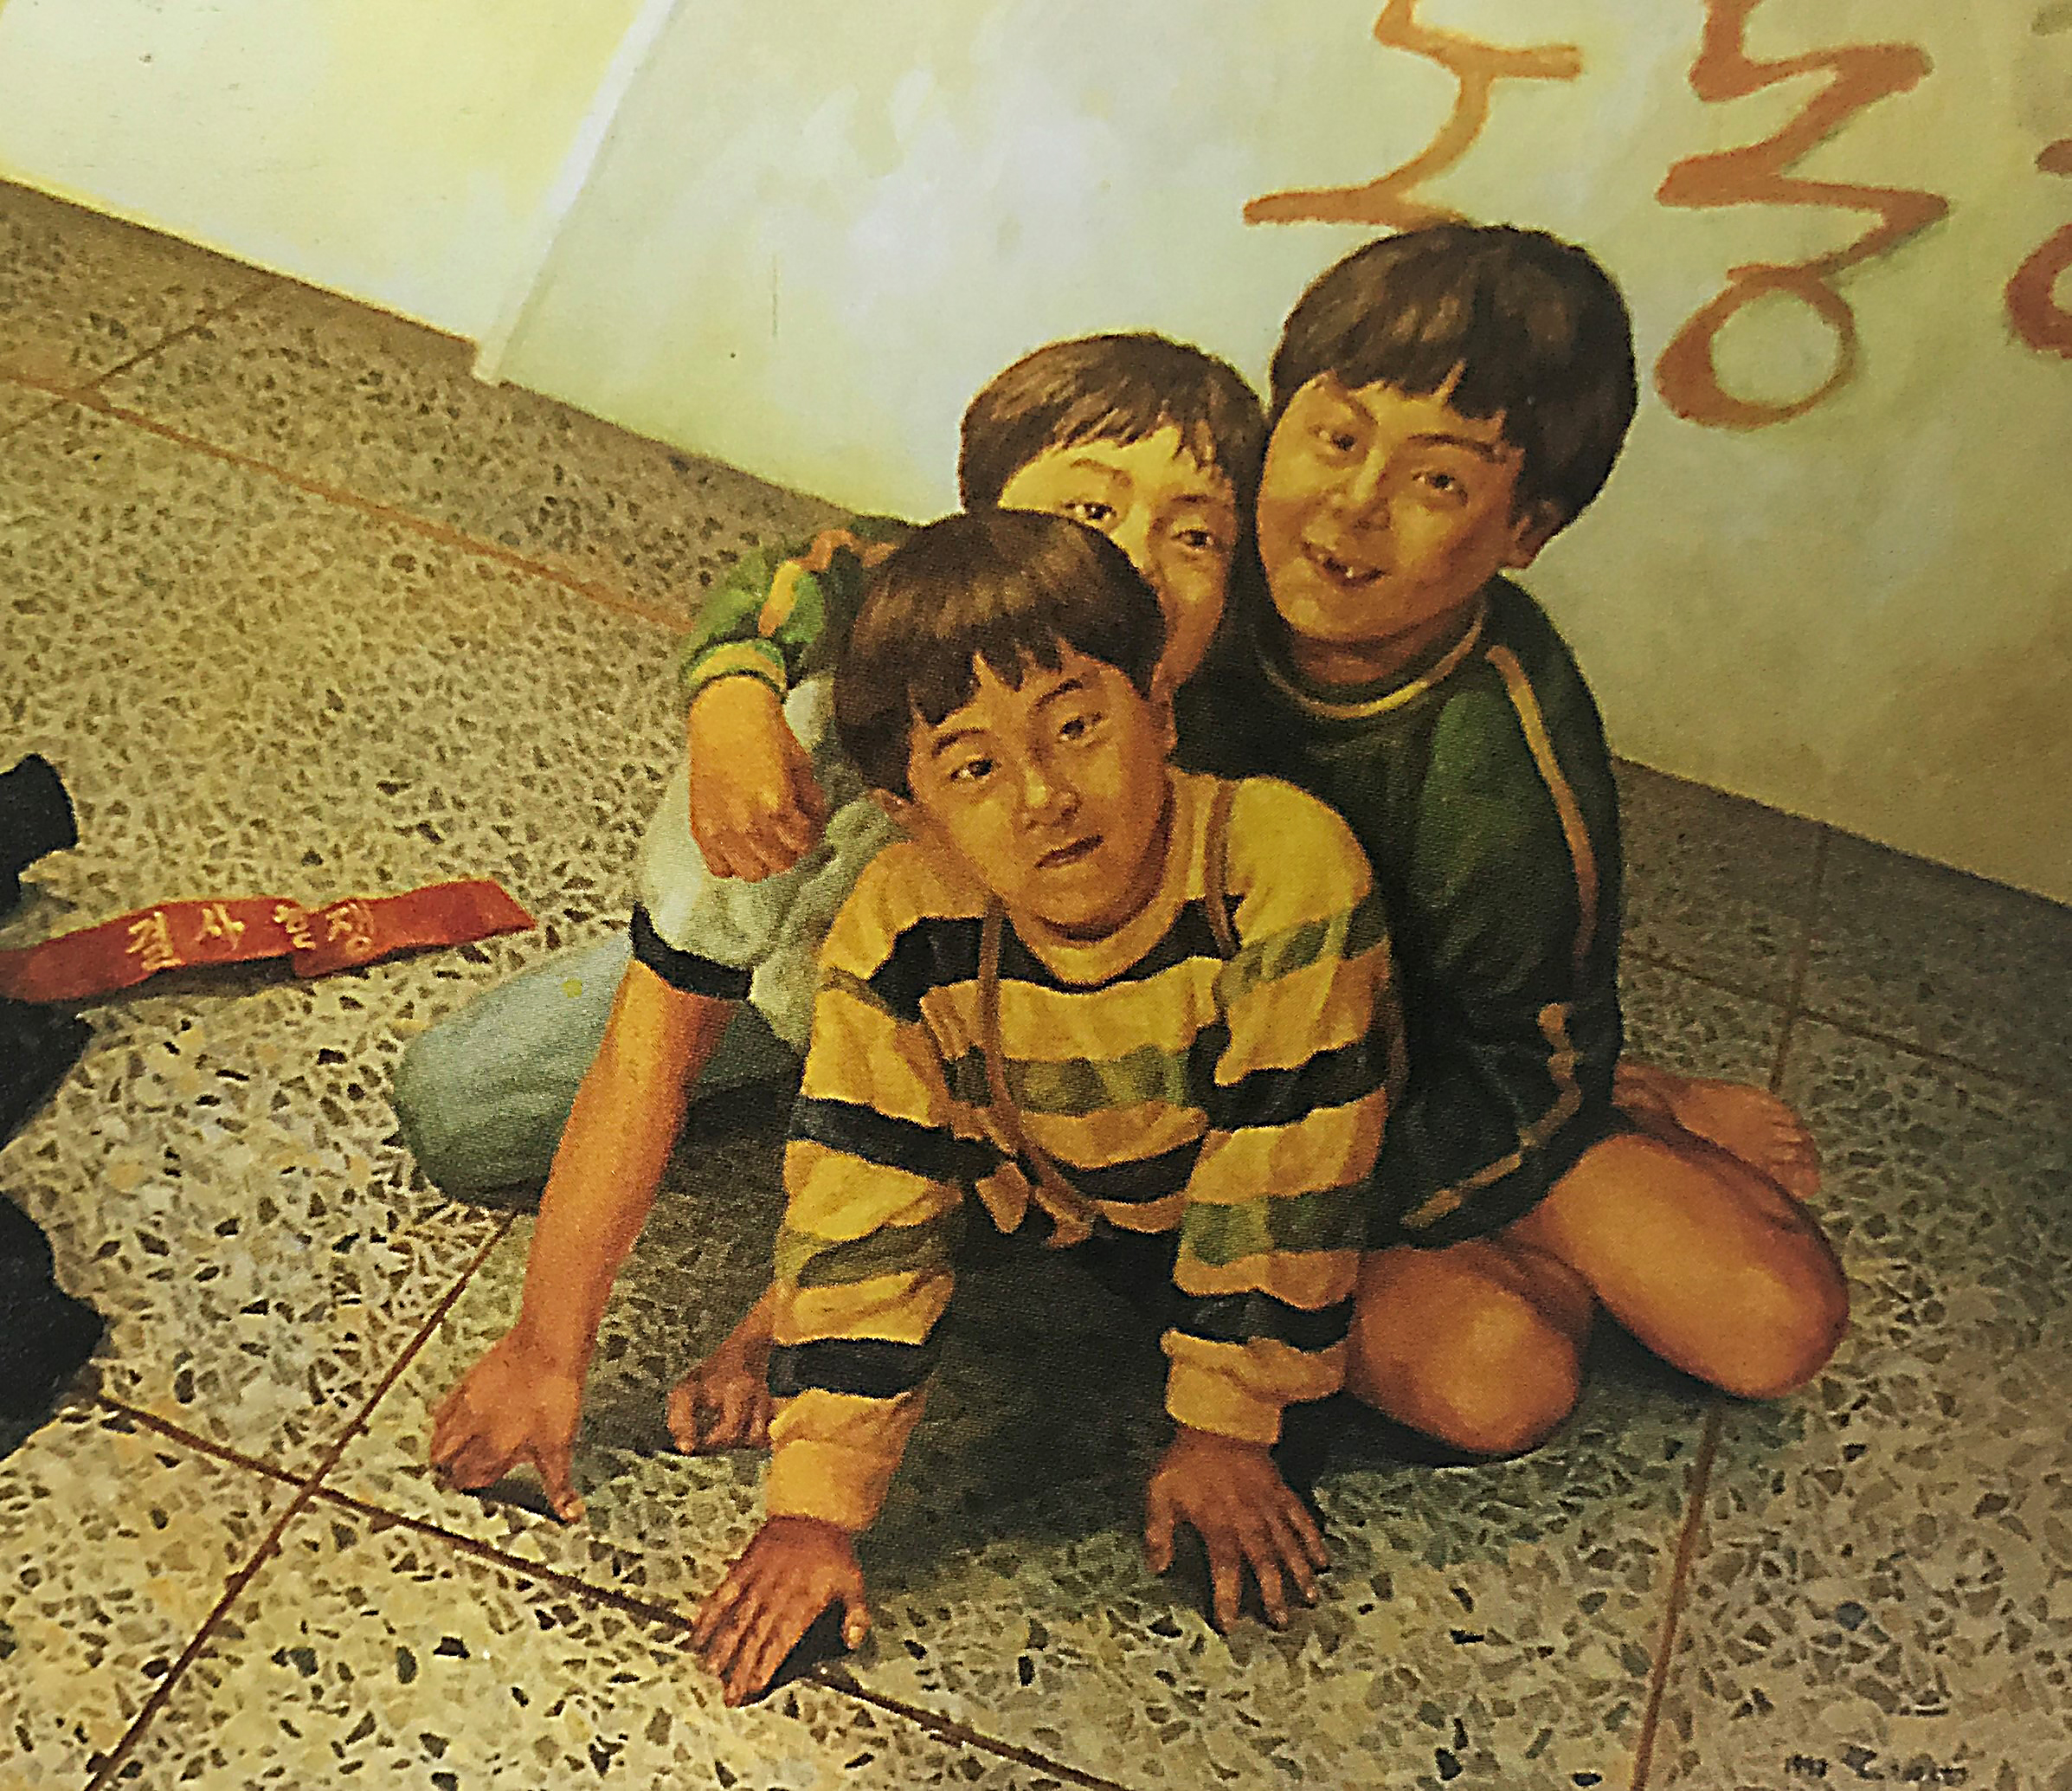  신경숙, 〈파업장에 아이들 번지점프를 하다〉, 1993(2021년 재제작), 유채, 116x140cm